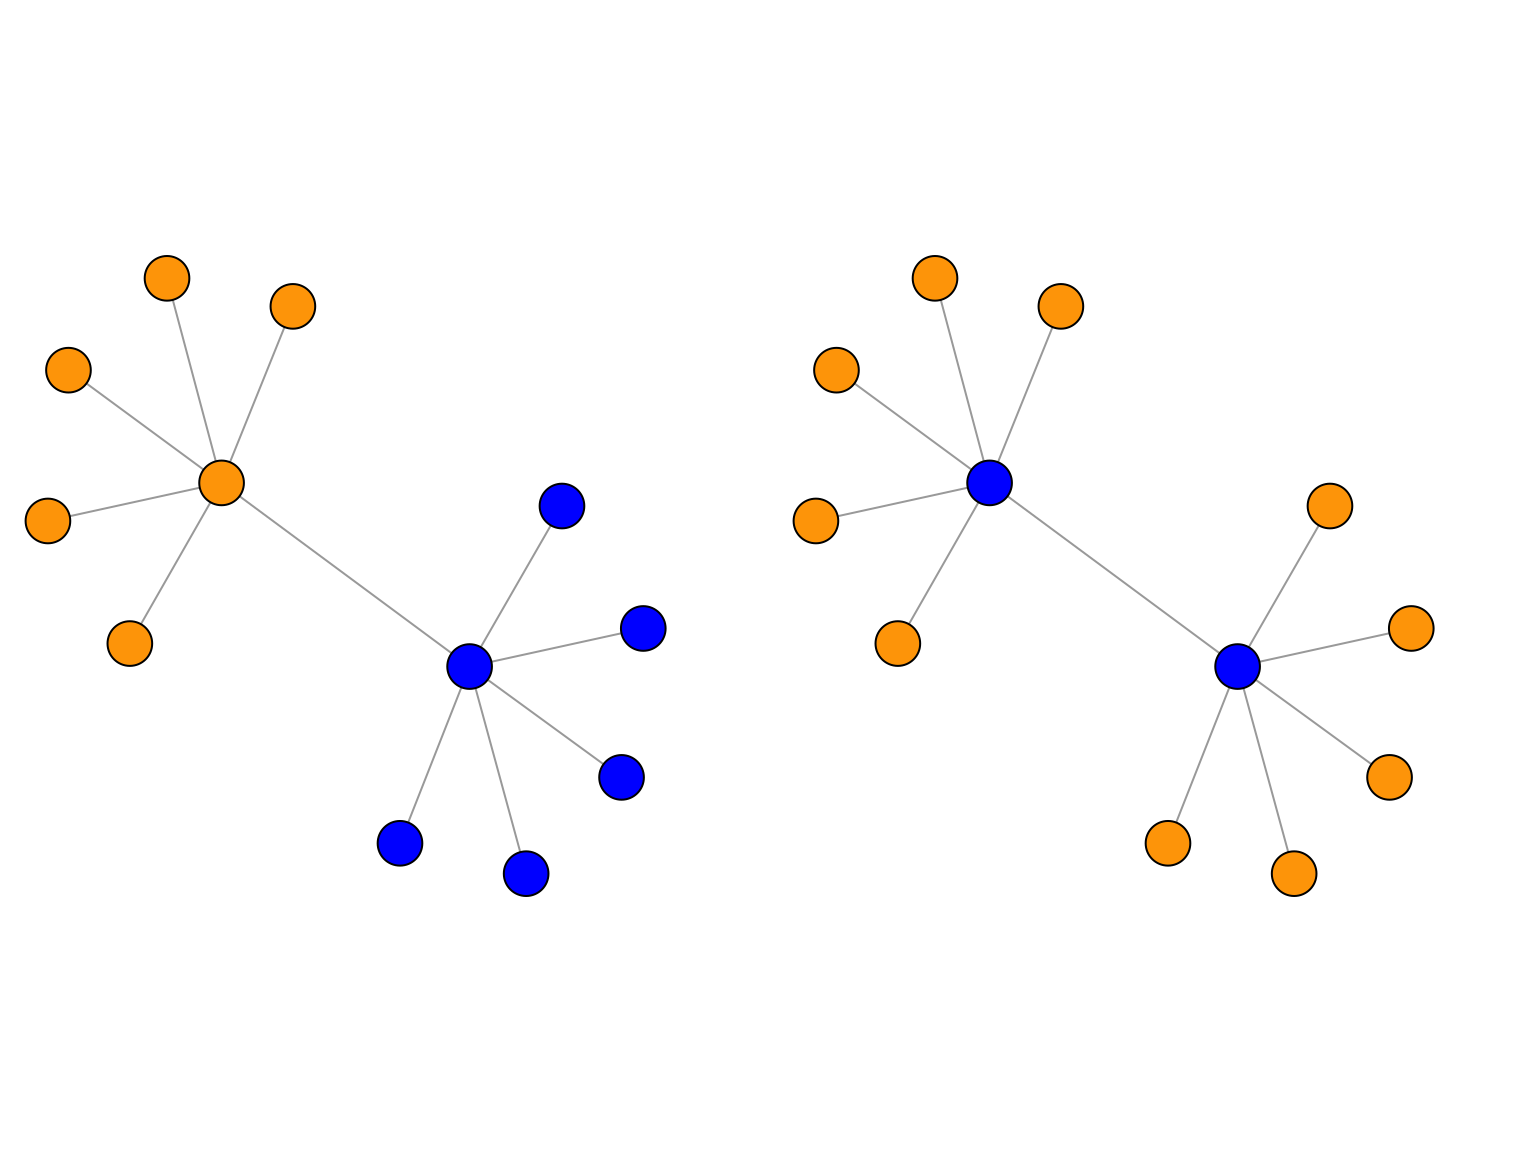 Deux partionnements différents pour les noeuds d'un même graphe